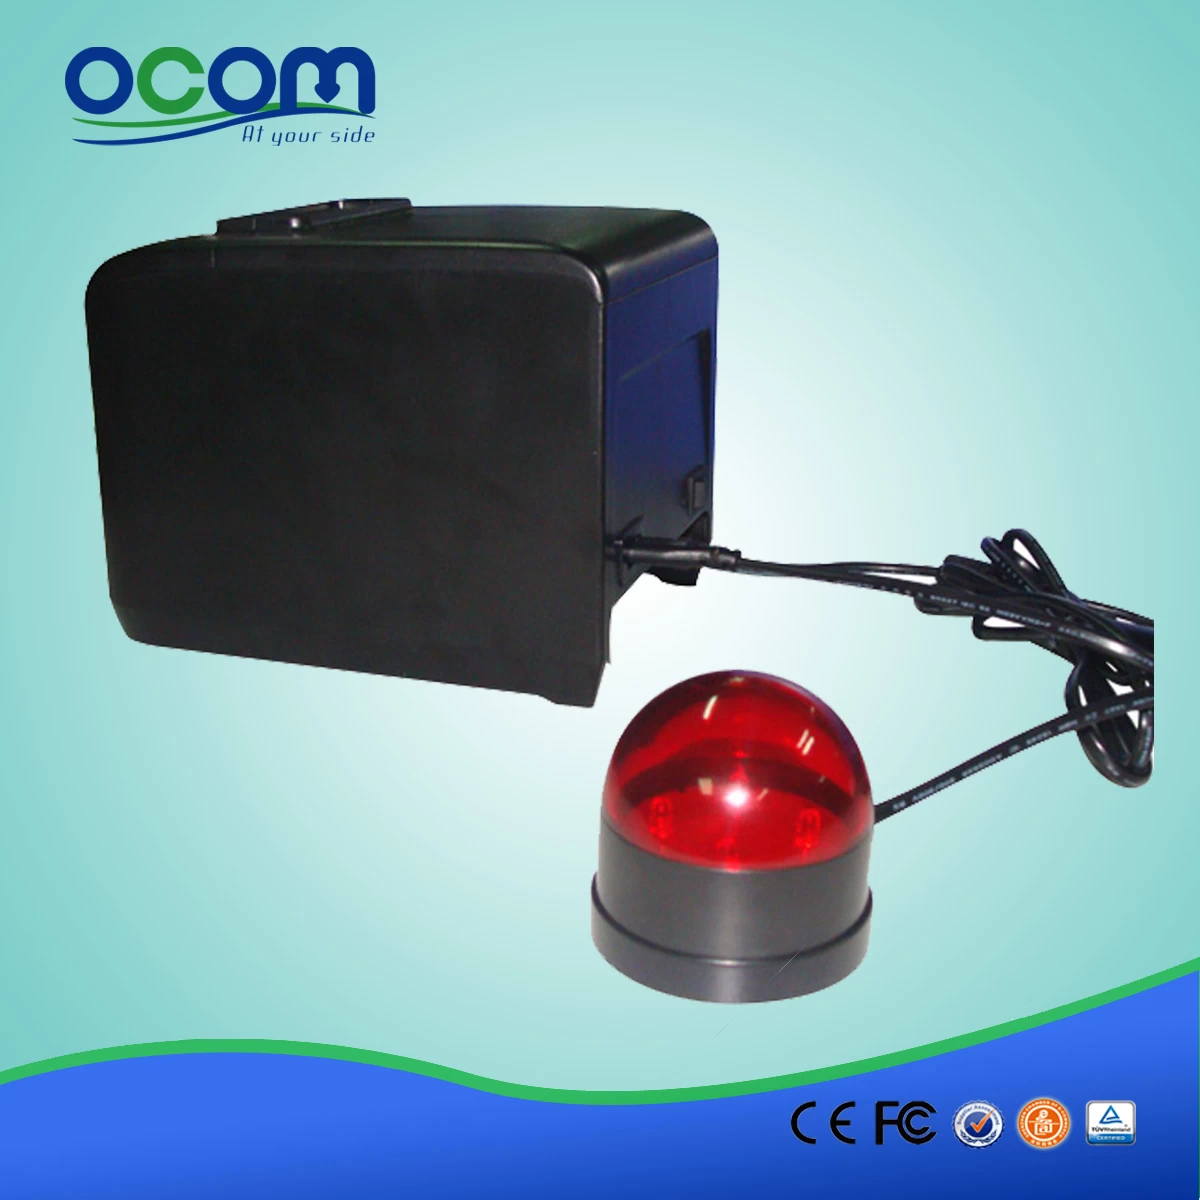 qr code thermal printer OCPP-808